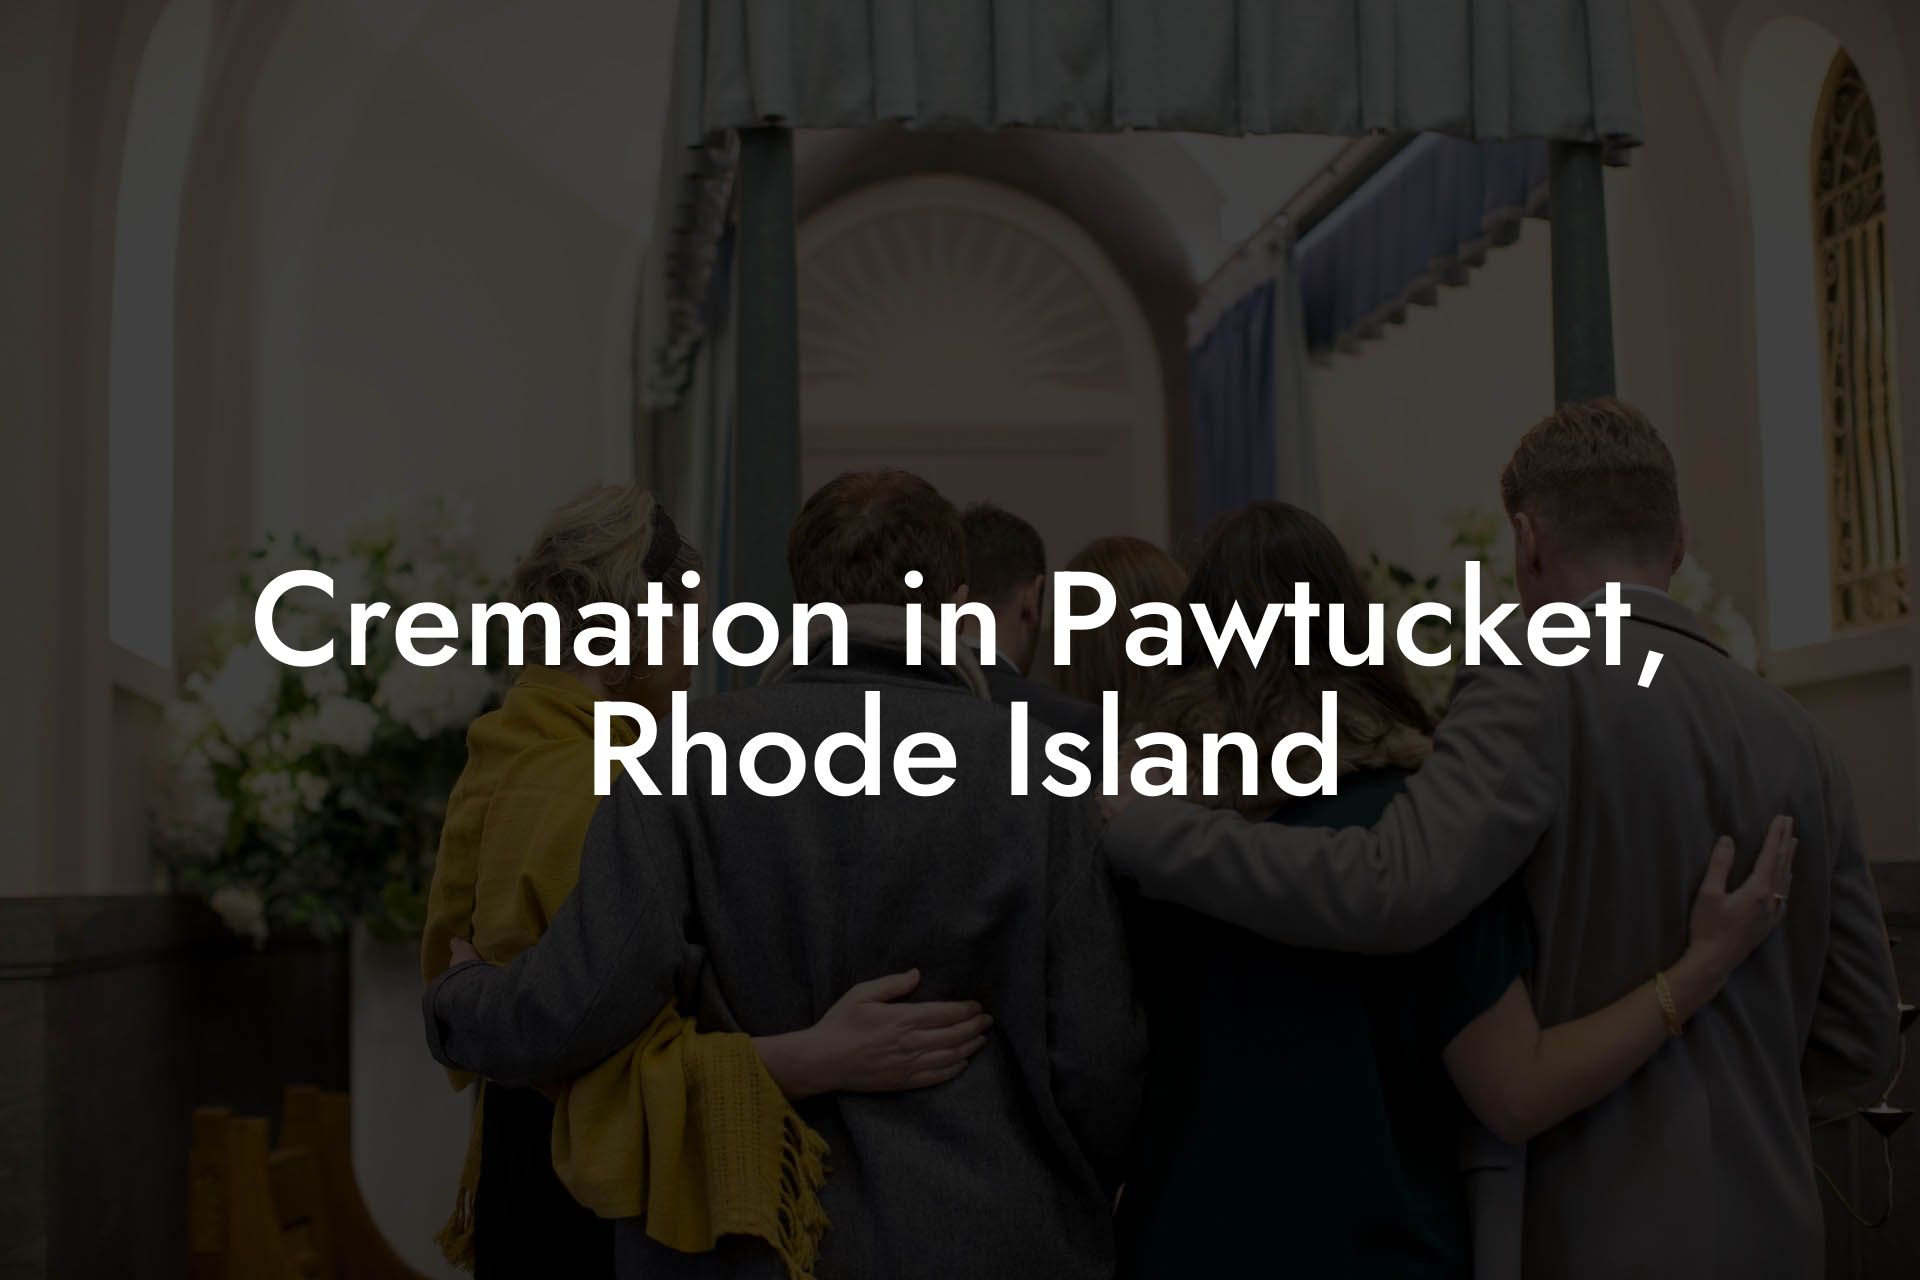 Cremation in Pawtucket, Rhode Island